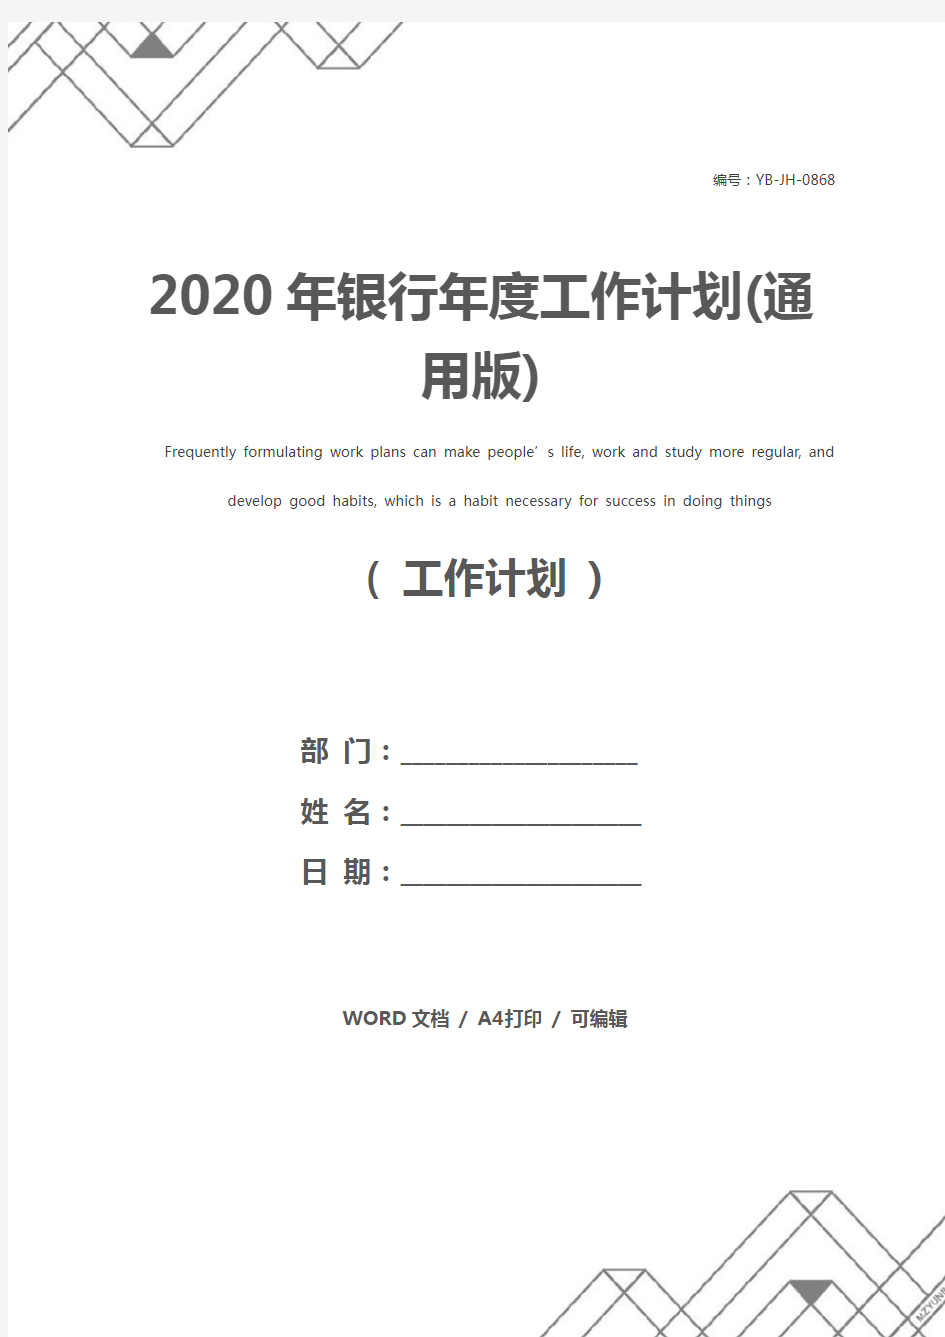 2020年银行年度工作计划(通用版)